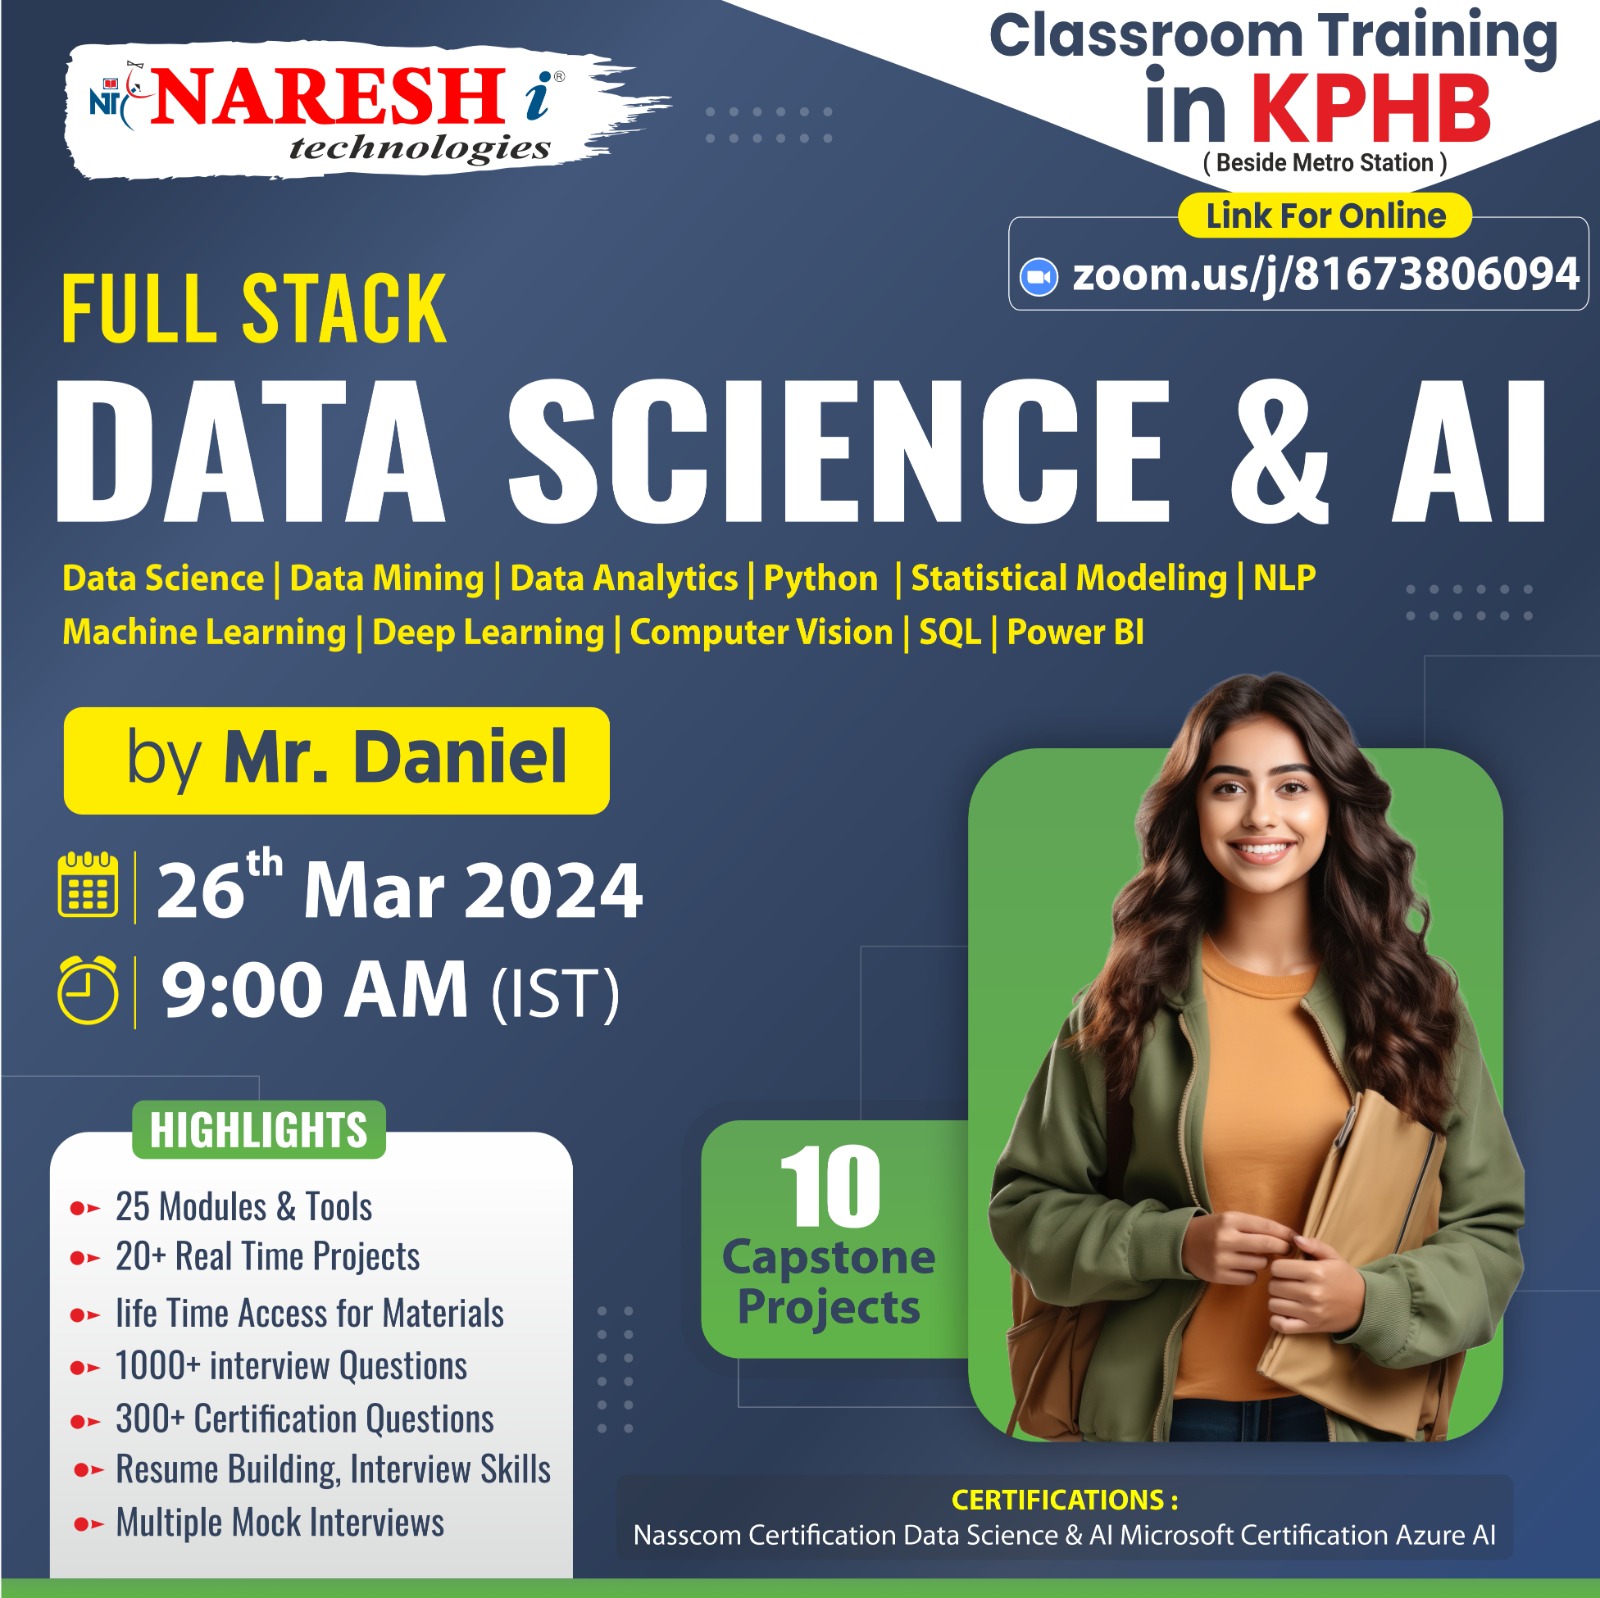 Data Science Software Training Institute in KPHB - NareshIT, Hyderabad, Telangana, India